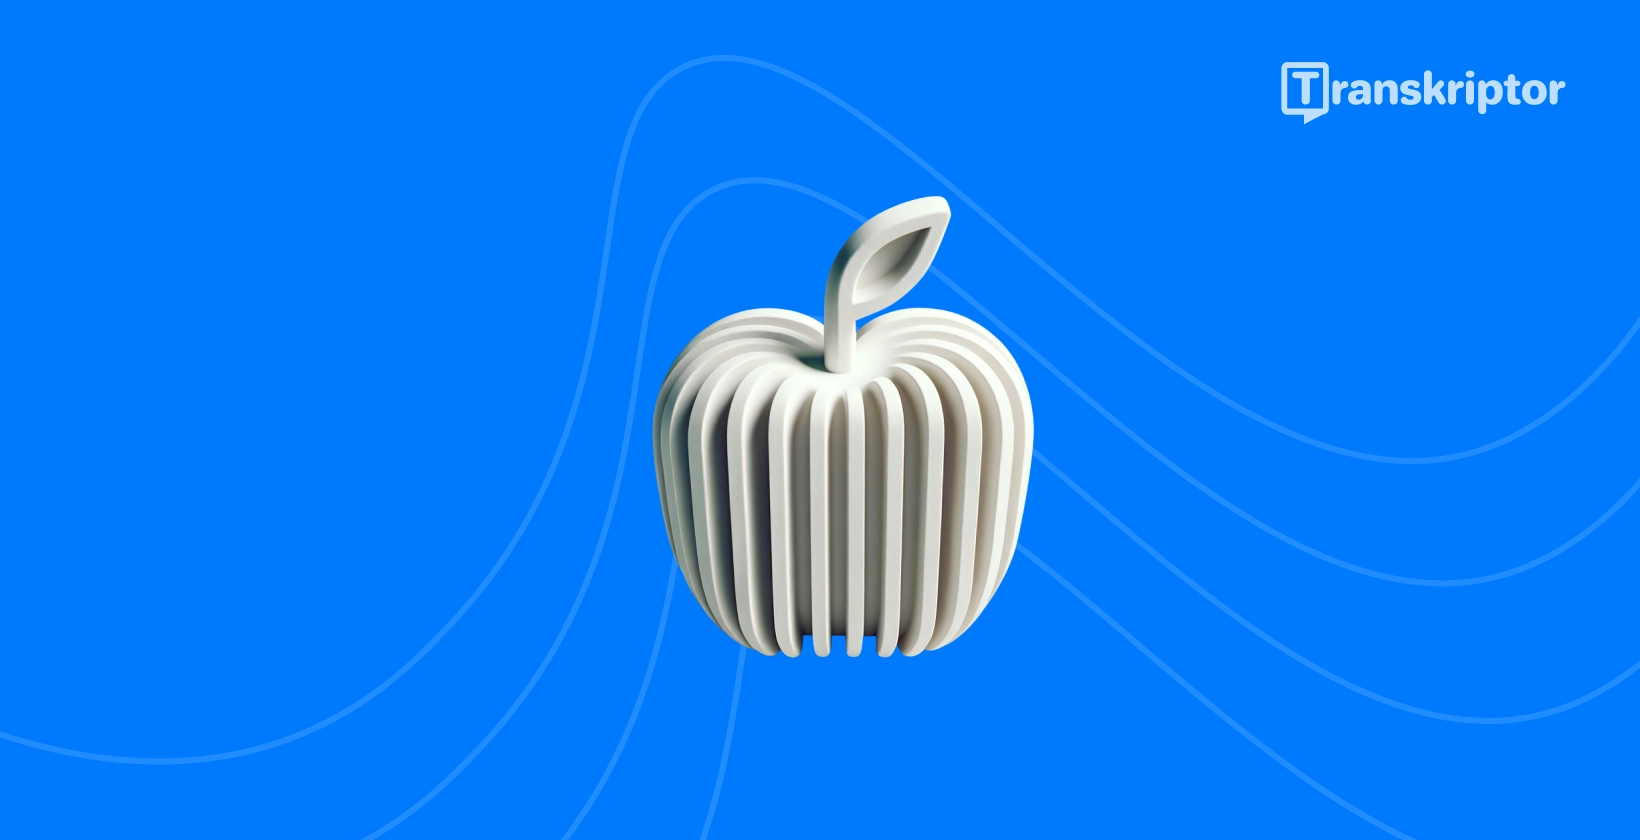 Stilisert eple med lydbølger representerer de beste transkripsjonsappene som er tilgjengelige for iPhone brukere.